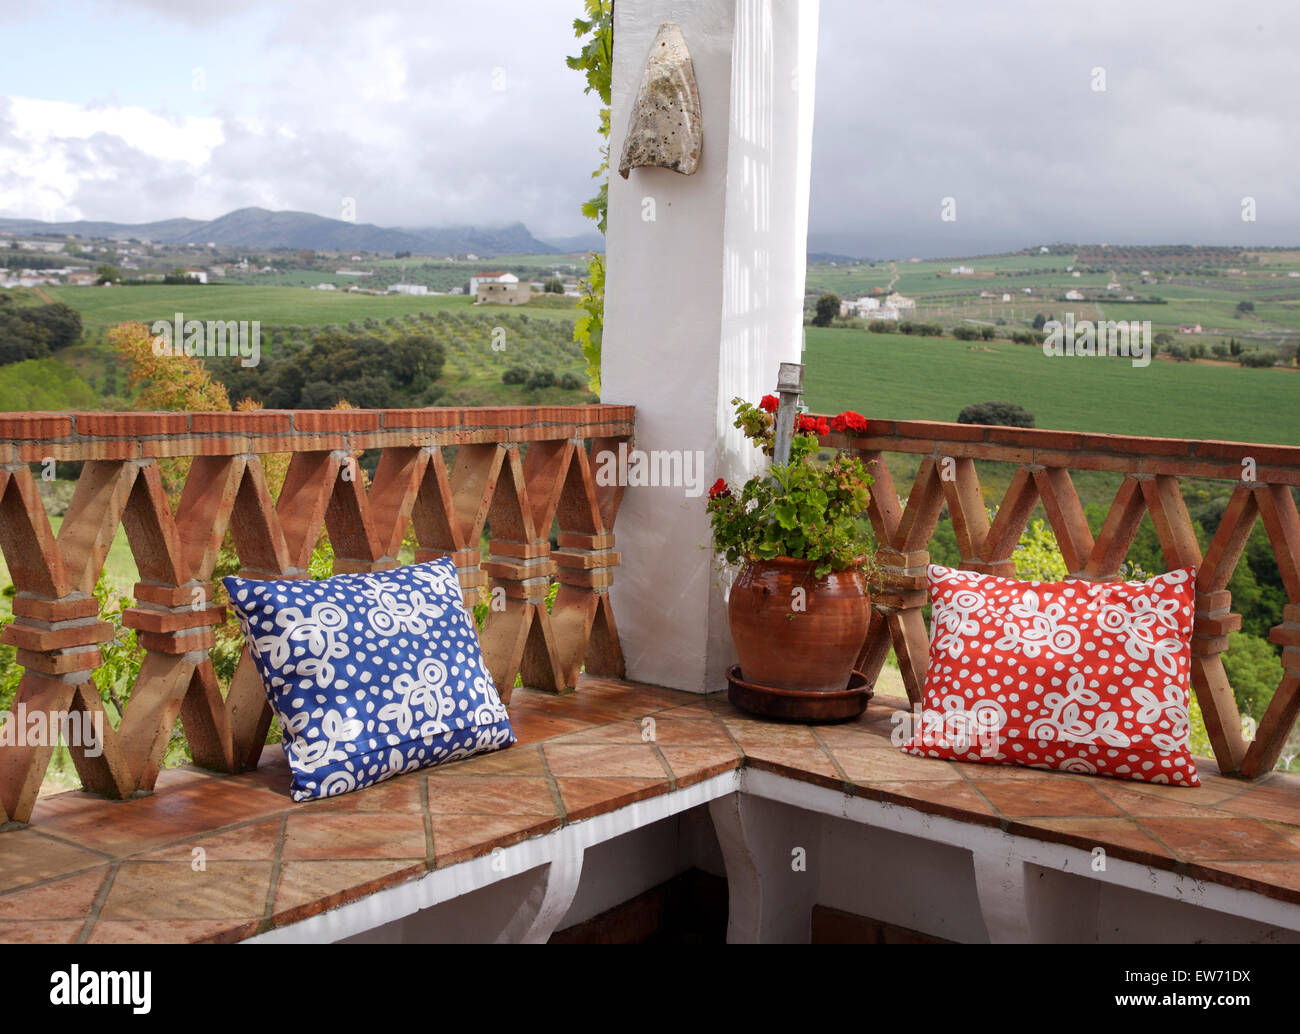 Coussins sur sol carrelé coin sur le balcon de l'espagnol villa avec une vue sur la campagne Banque D'Images